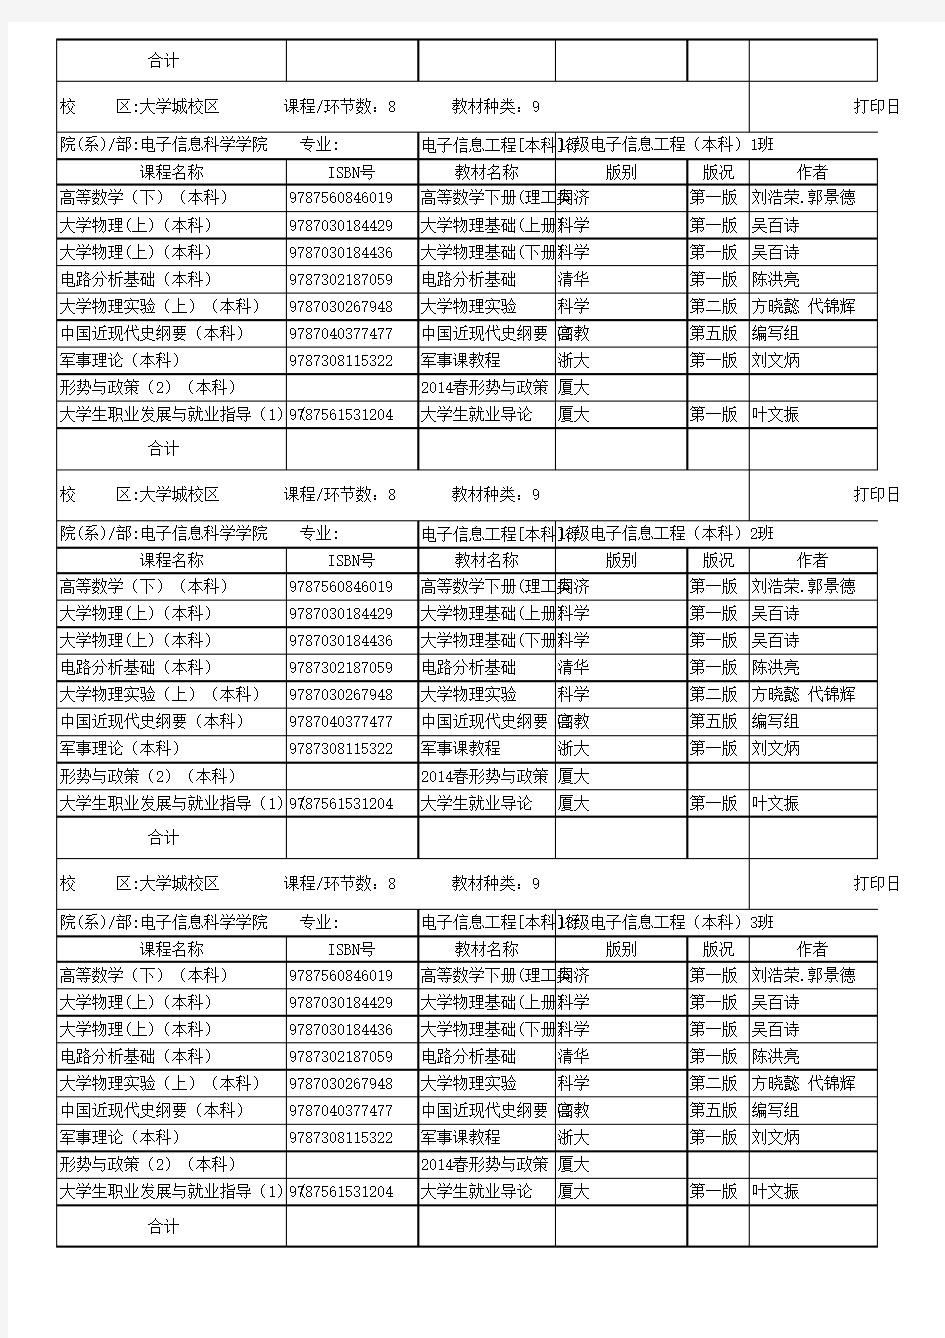 福建江夏学院2013-2014学年第二学期分班级收订明细